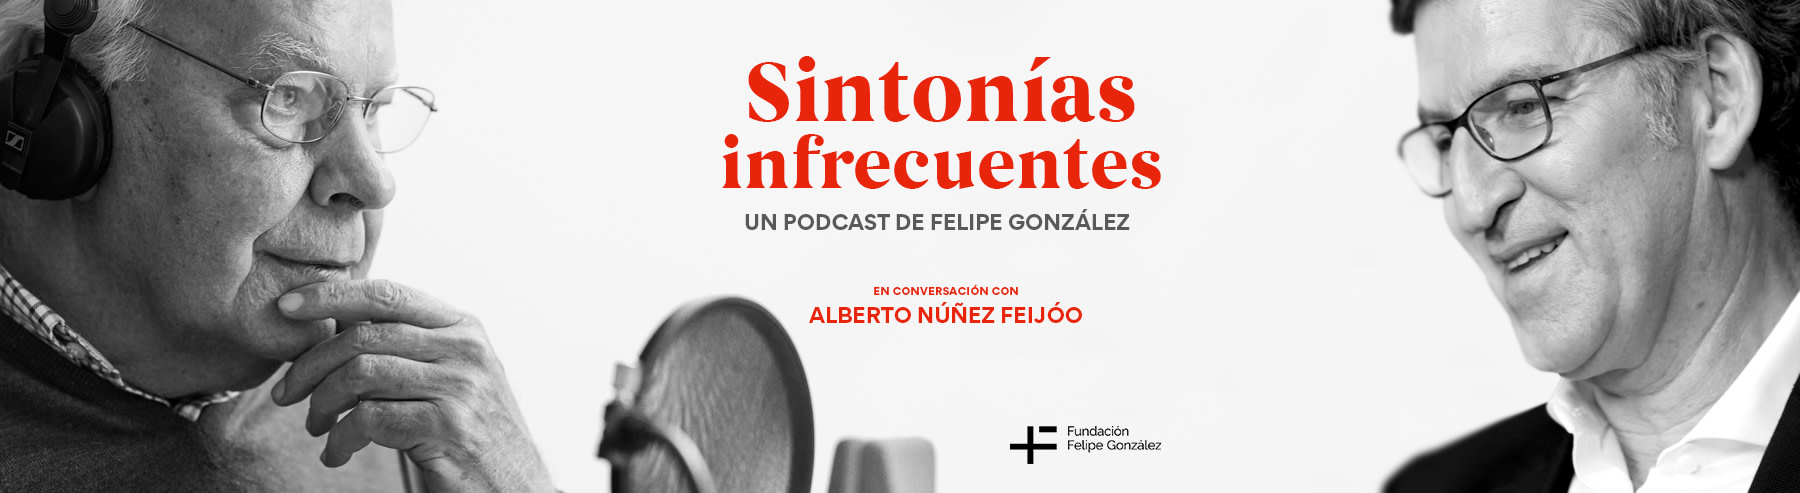 Felipe González y Alberto Núñez Feijóo conversan en el cuarto episodio de Sintonías infrecuentes, el podcast que el expresidente del Gobierno tiene en Podimo